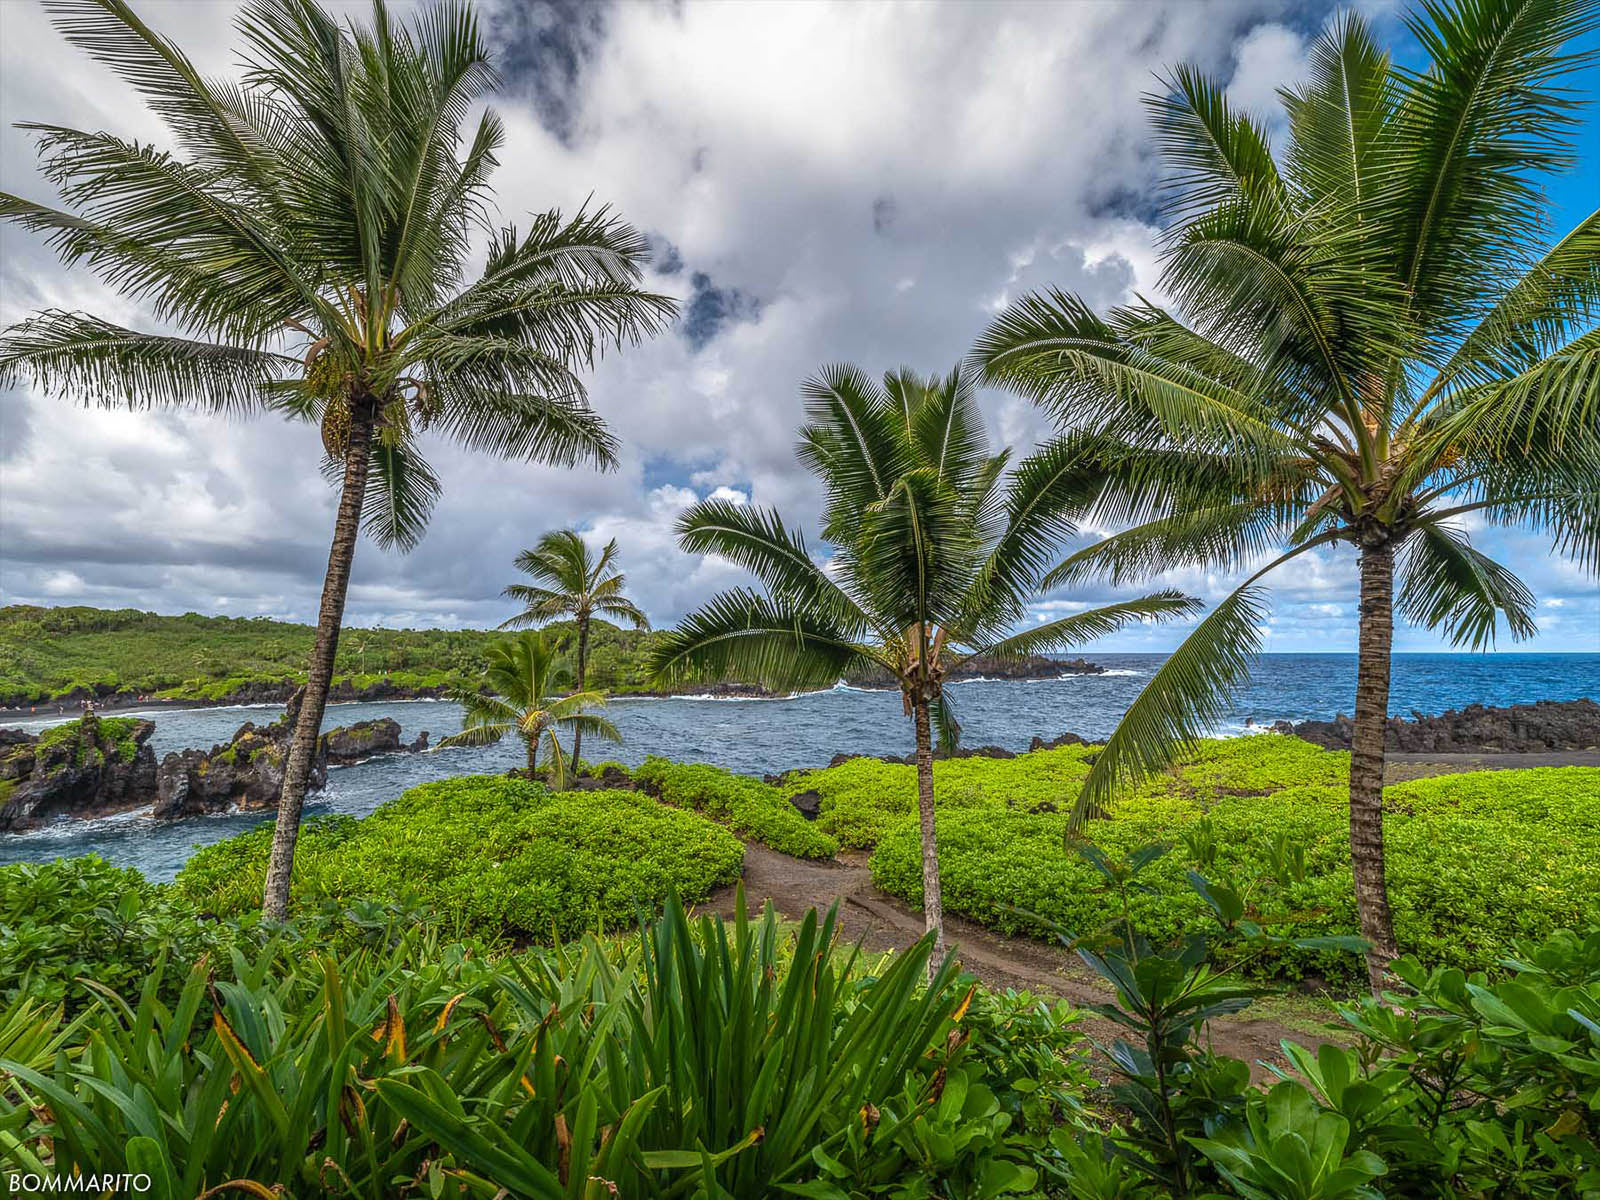 Maui Palms